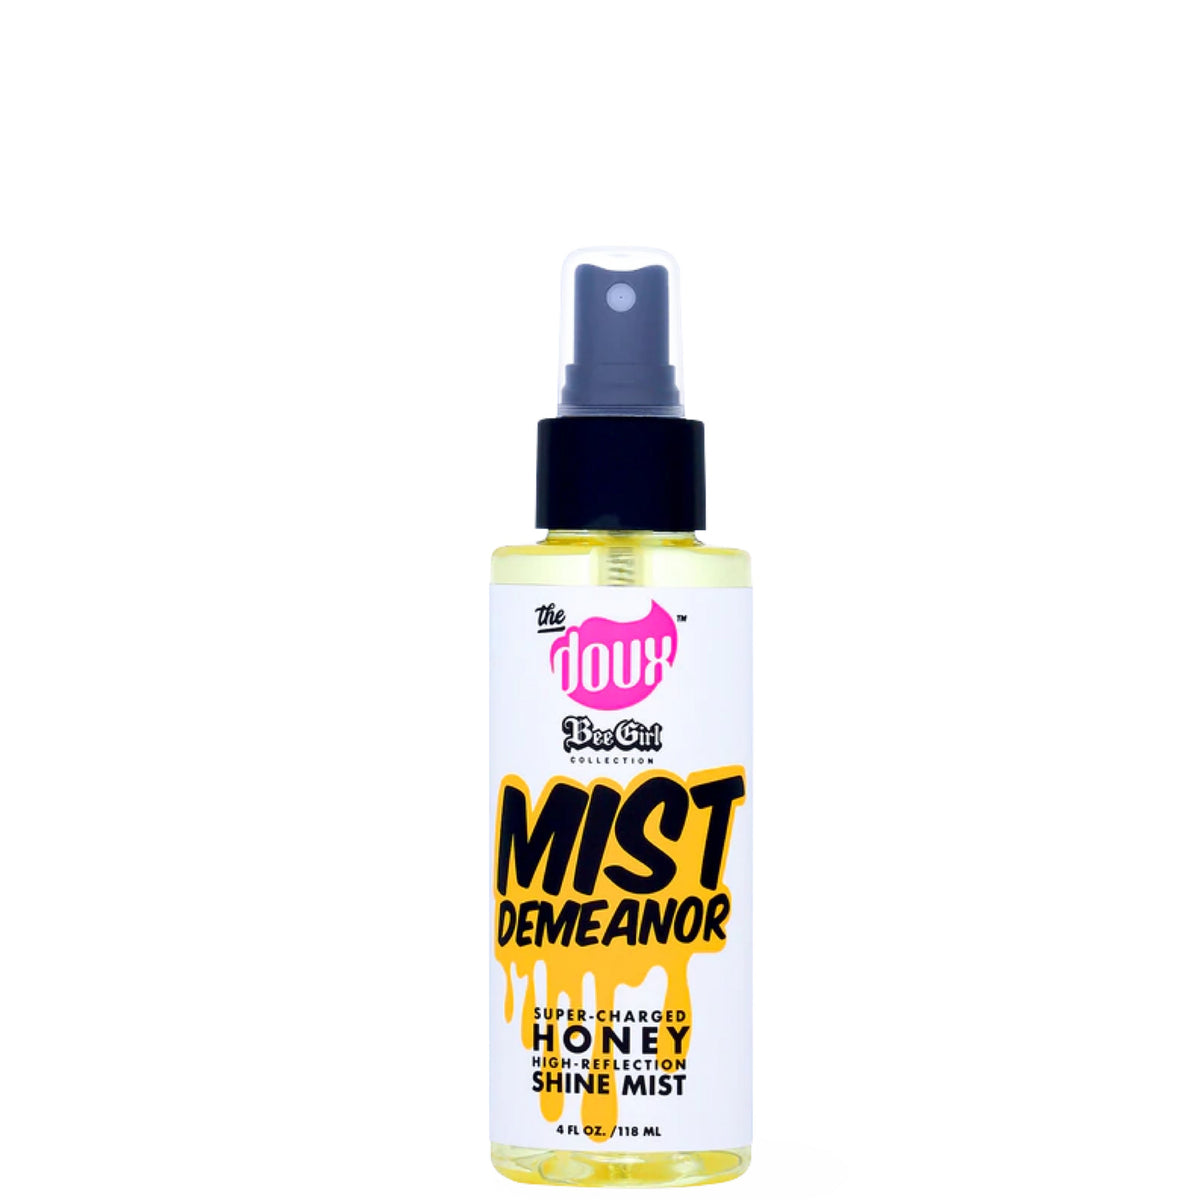 Naturalistic Products - The Doux Mist Demeanor Honey Shine Mist 4oz